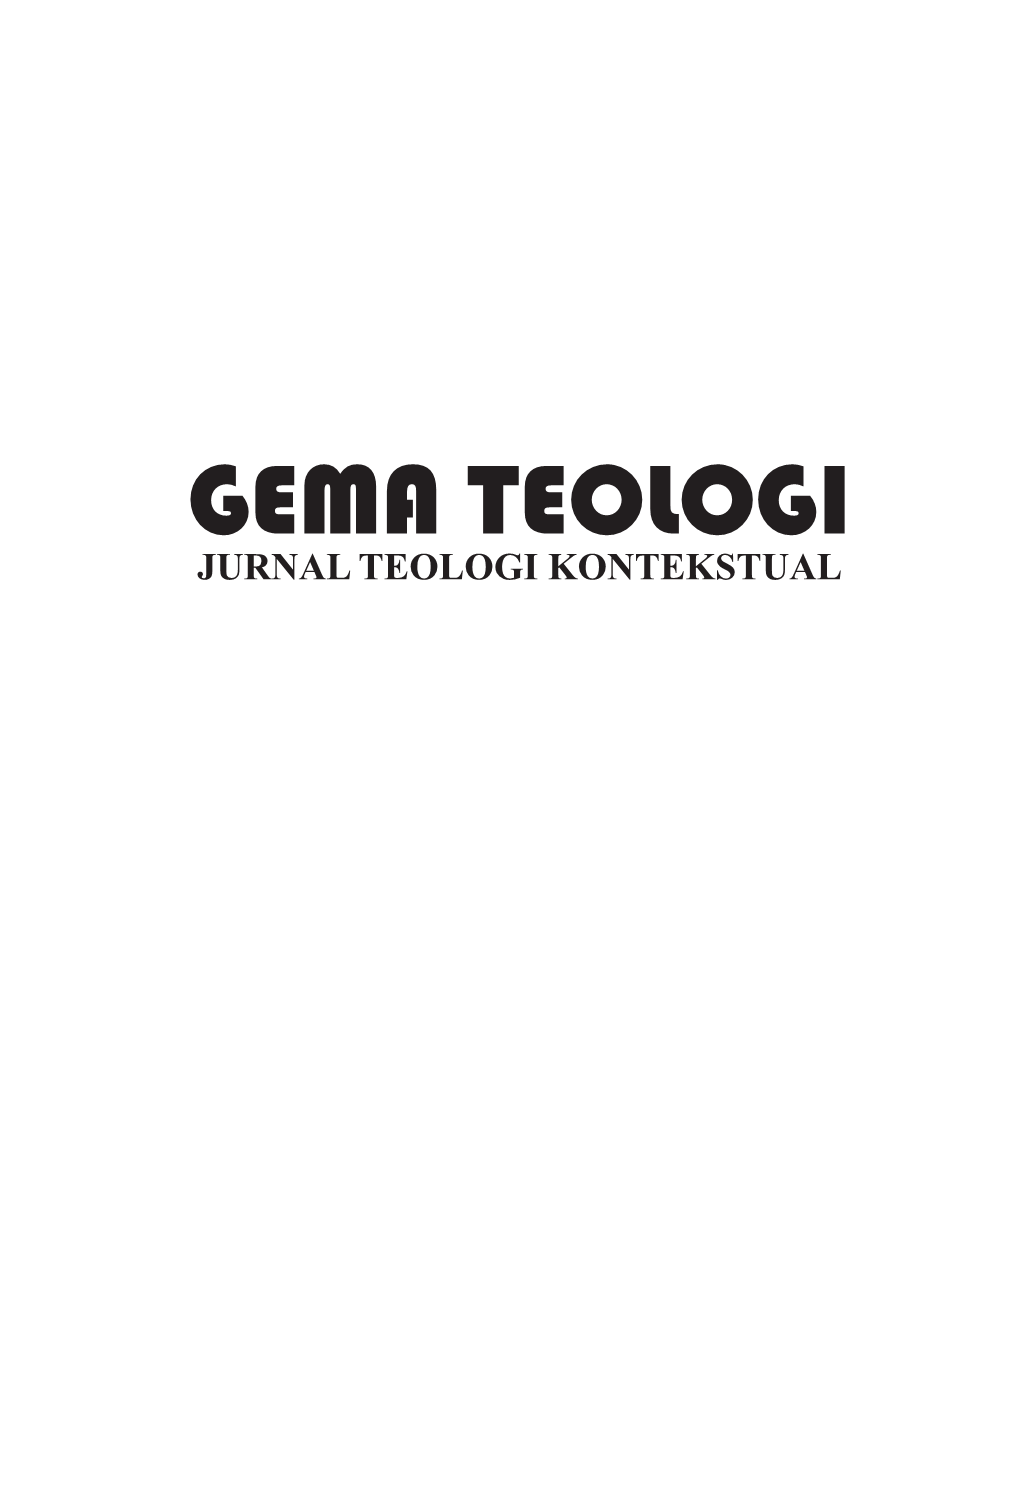 Book Gema Teologi Vol 37 No 1 Rev.Indb